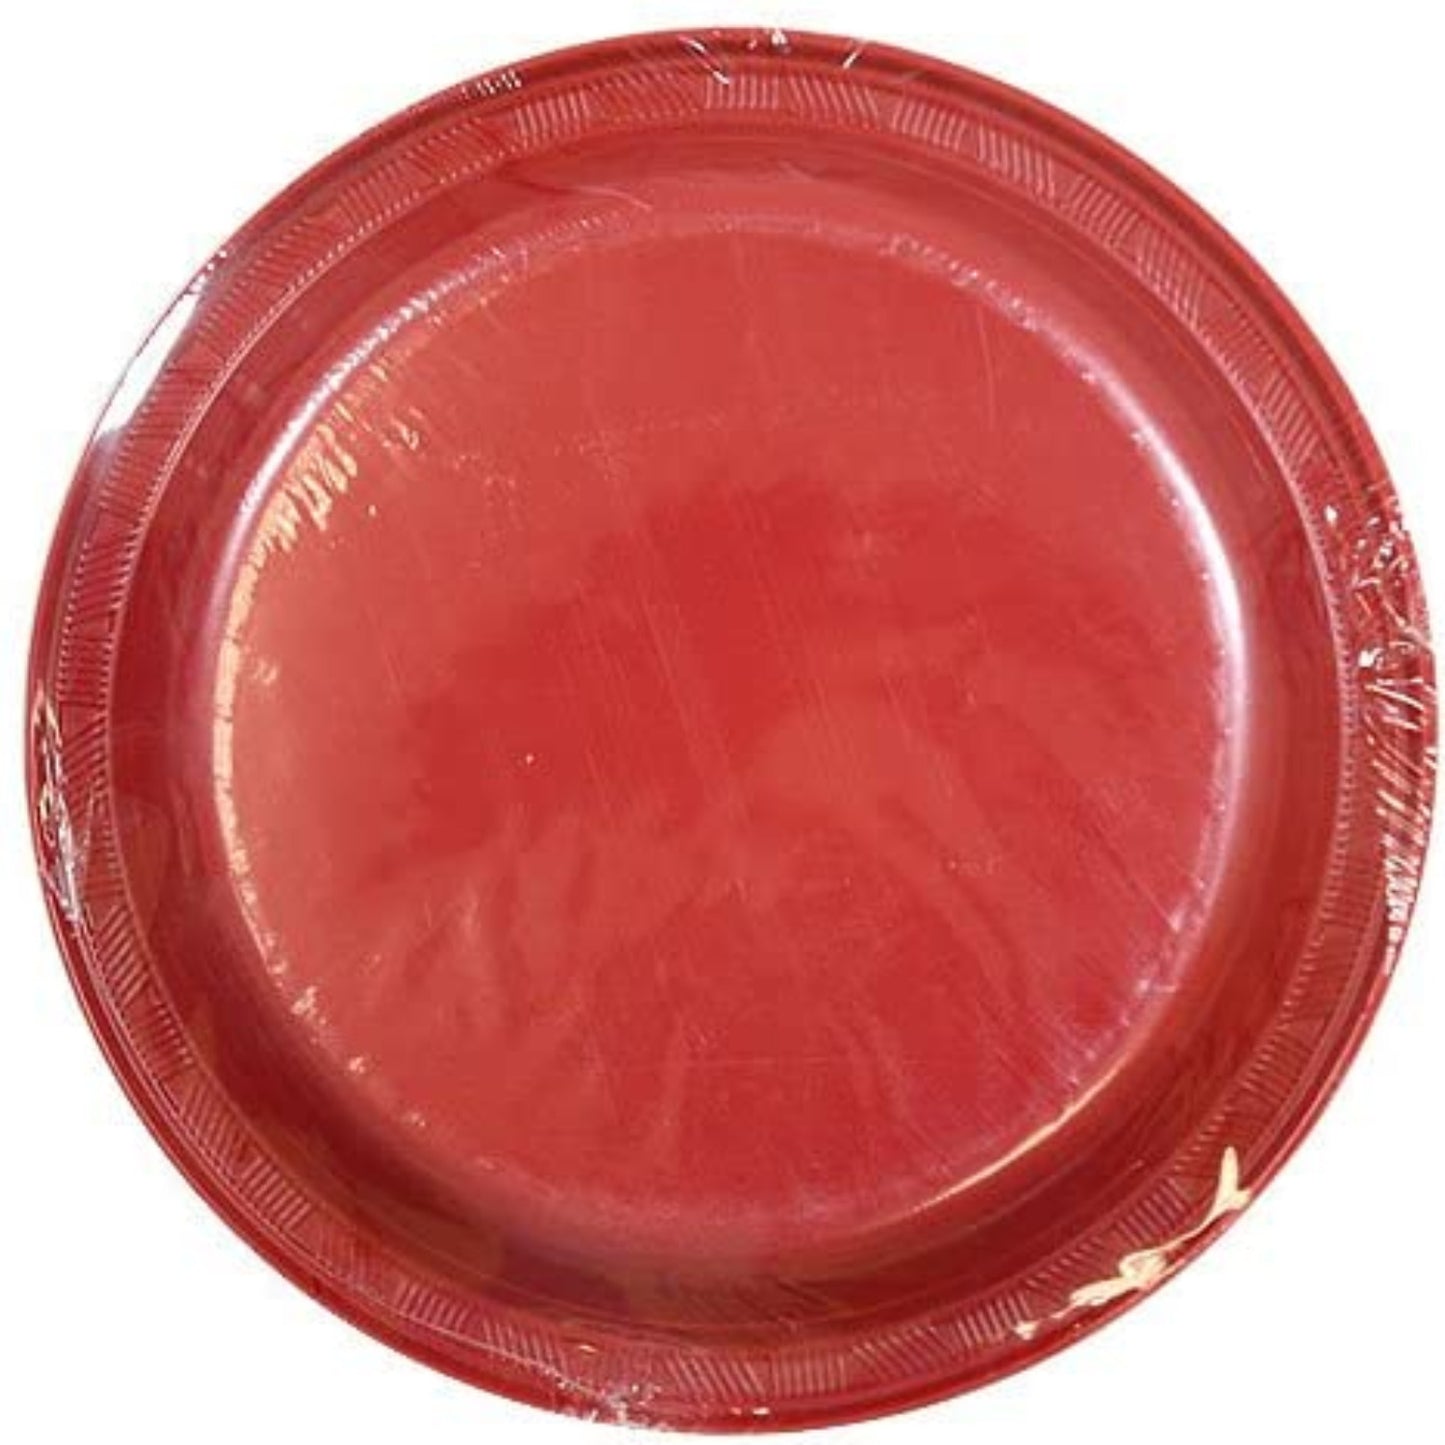 Hanna K. Signature Plastic Plates Red 7" Plastic Plates Hanna K   